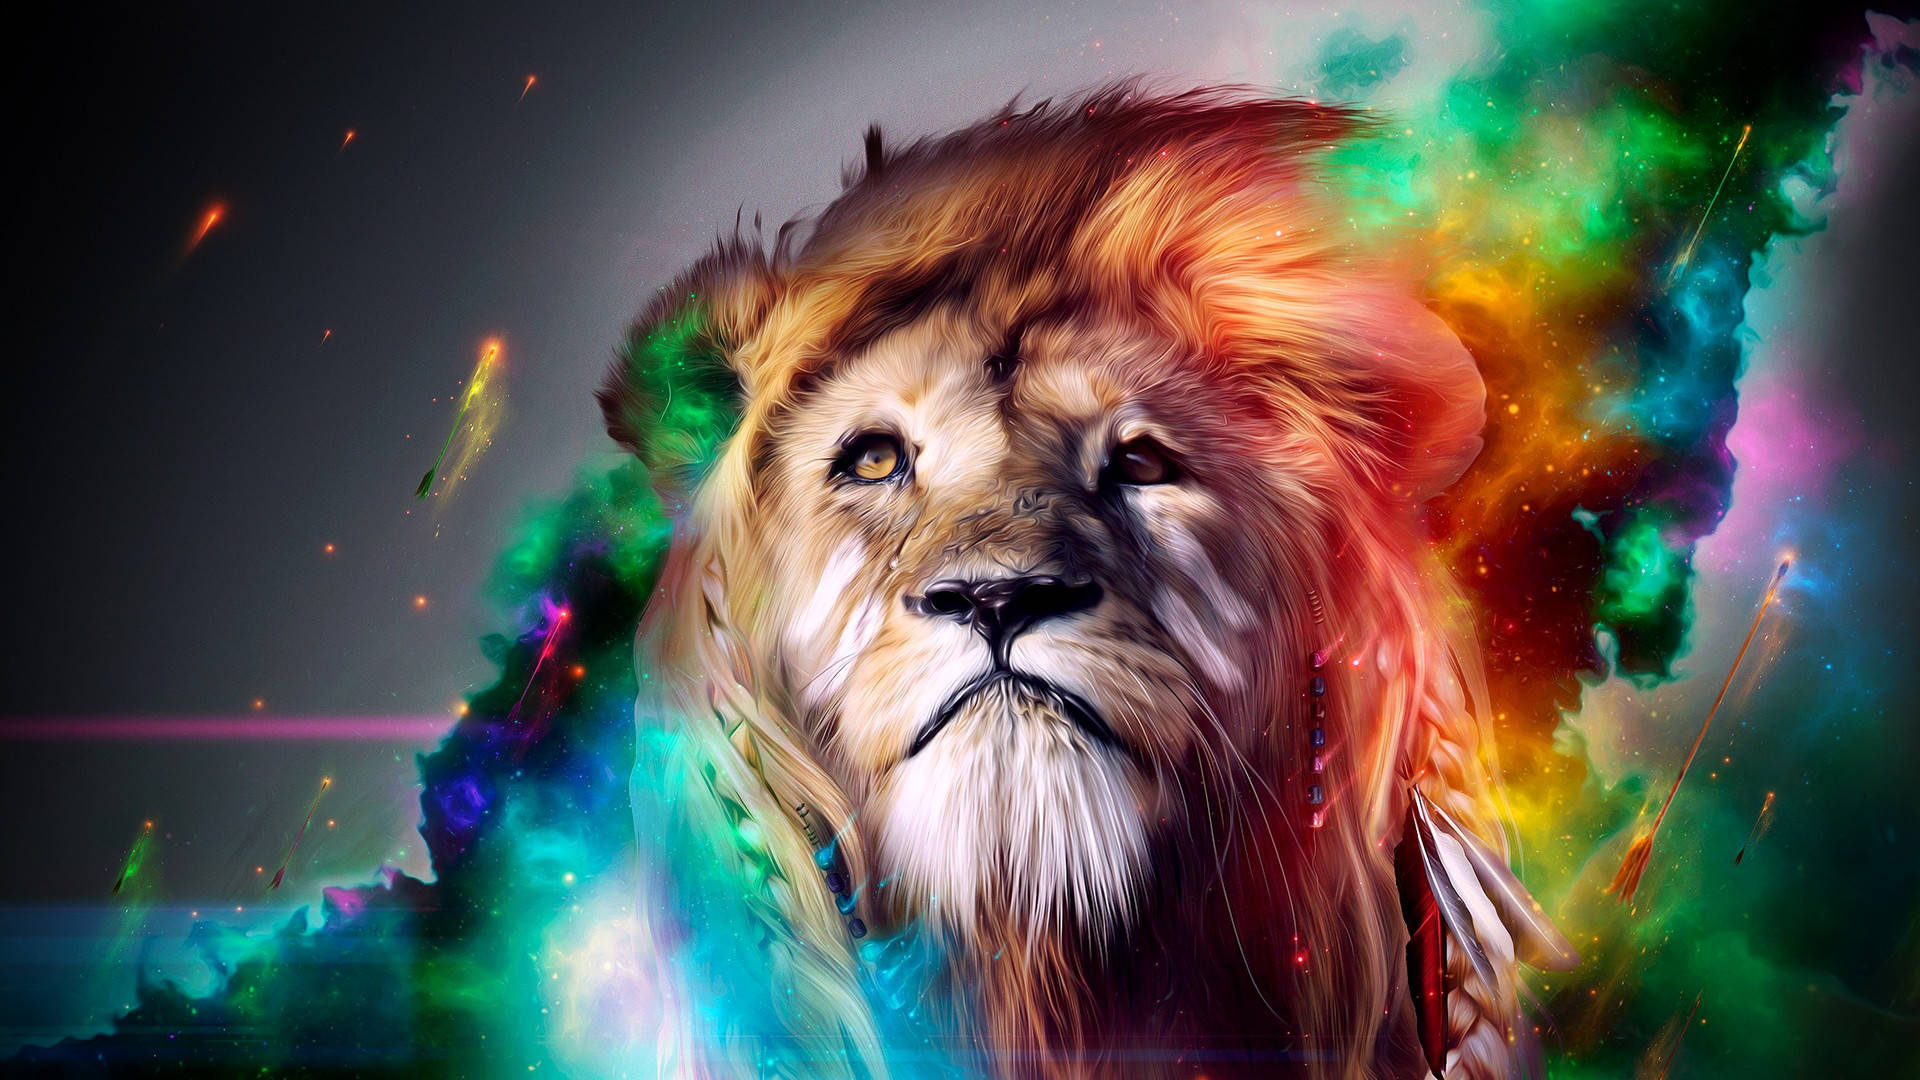 cool lion wallpaper hd 1080p